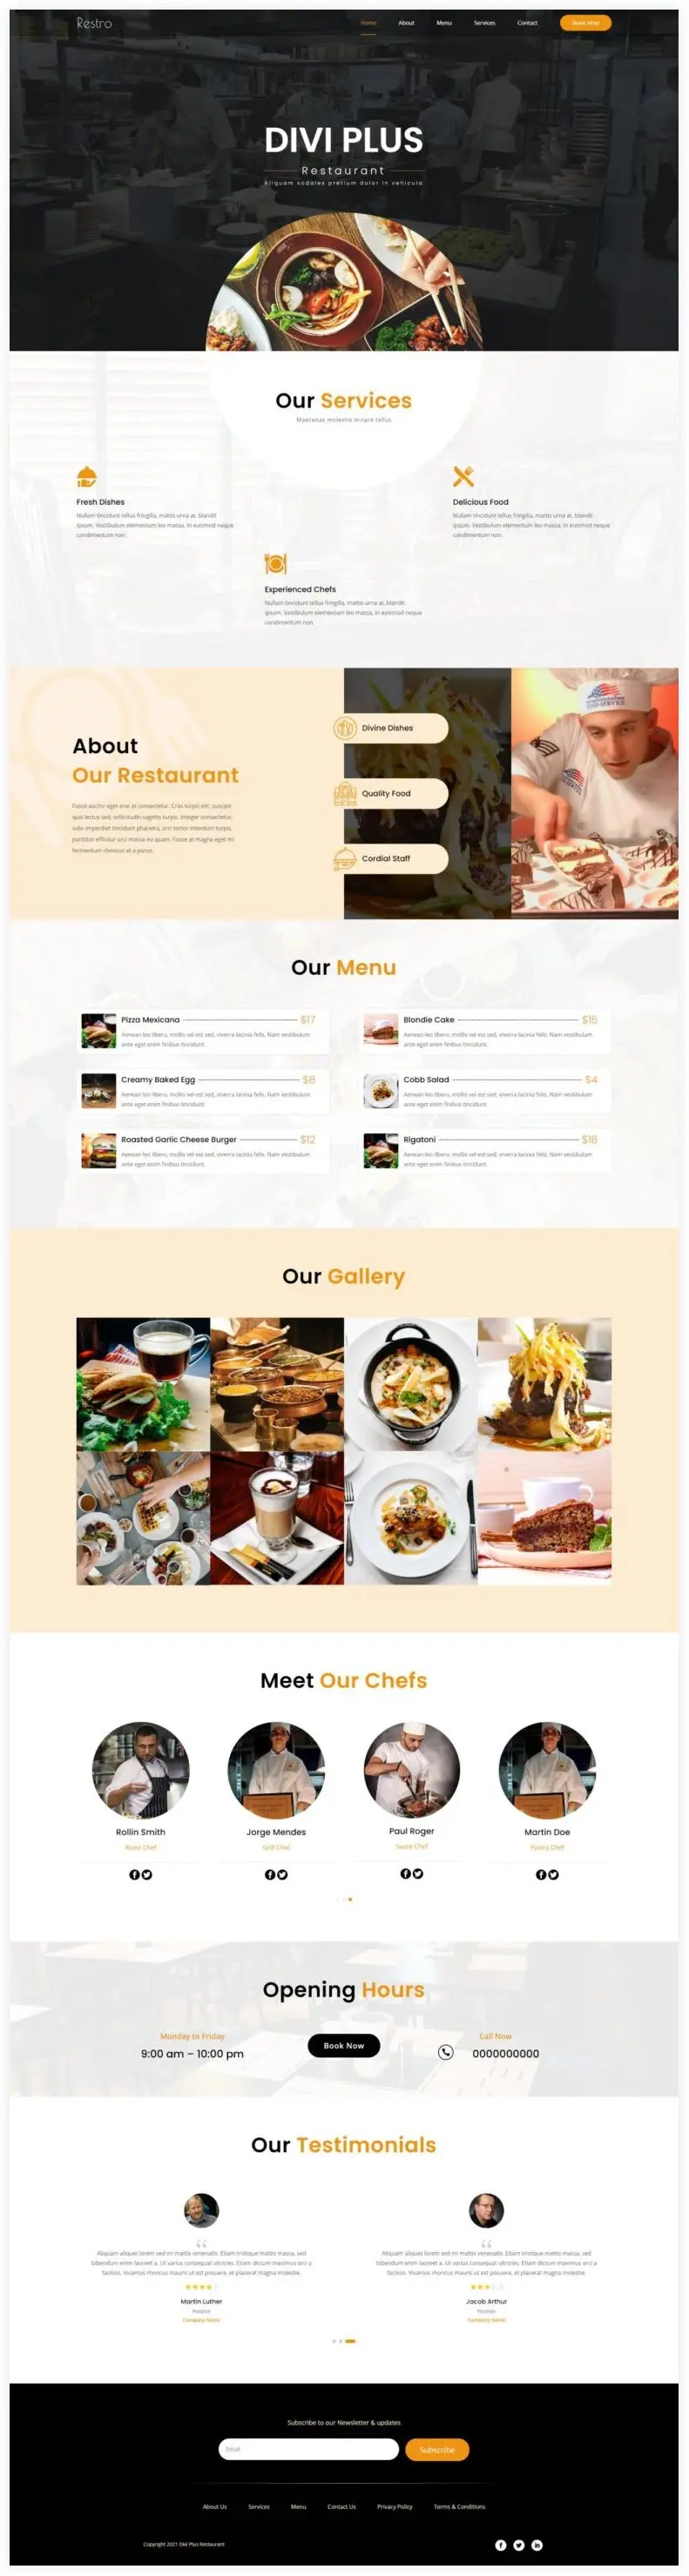 Restaurant homepage layout